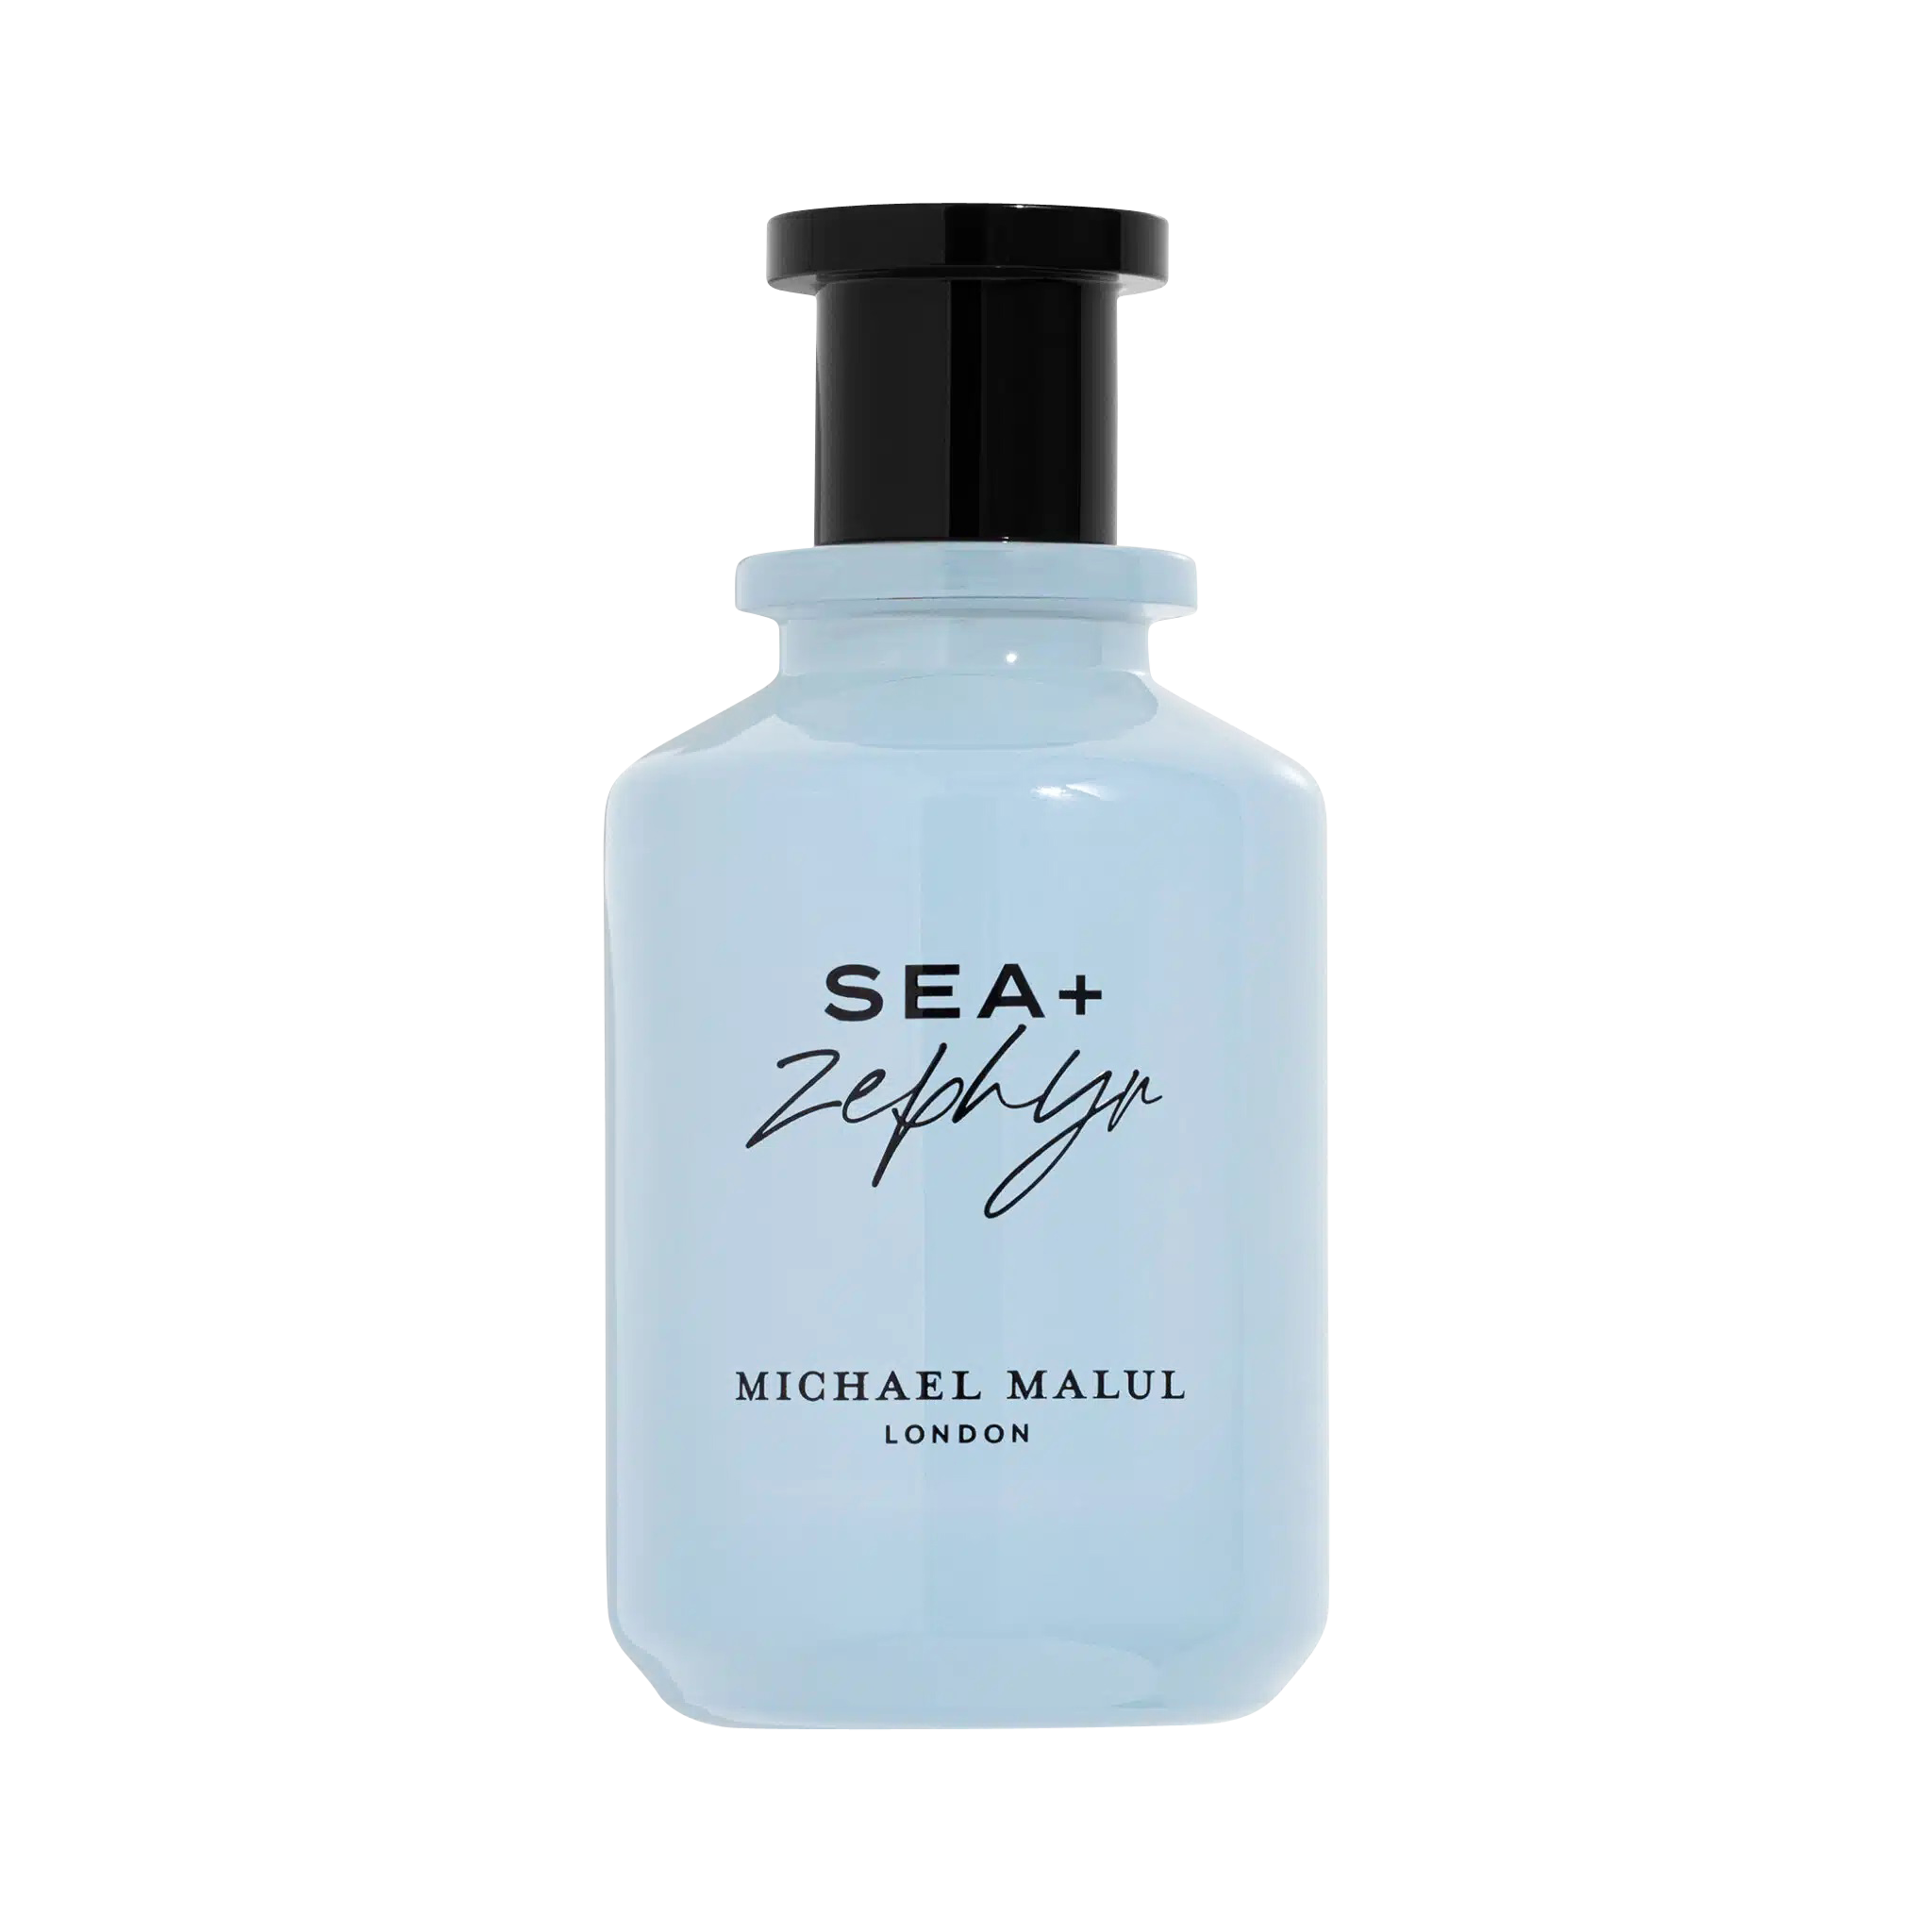 Sea+Zephyr